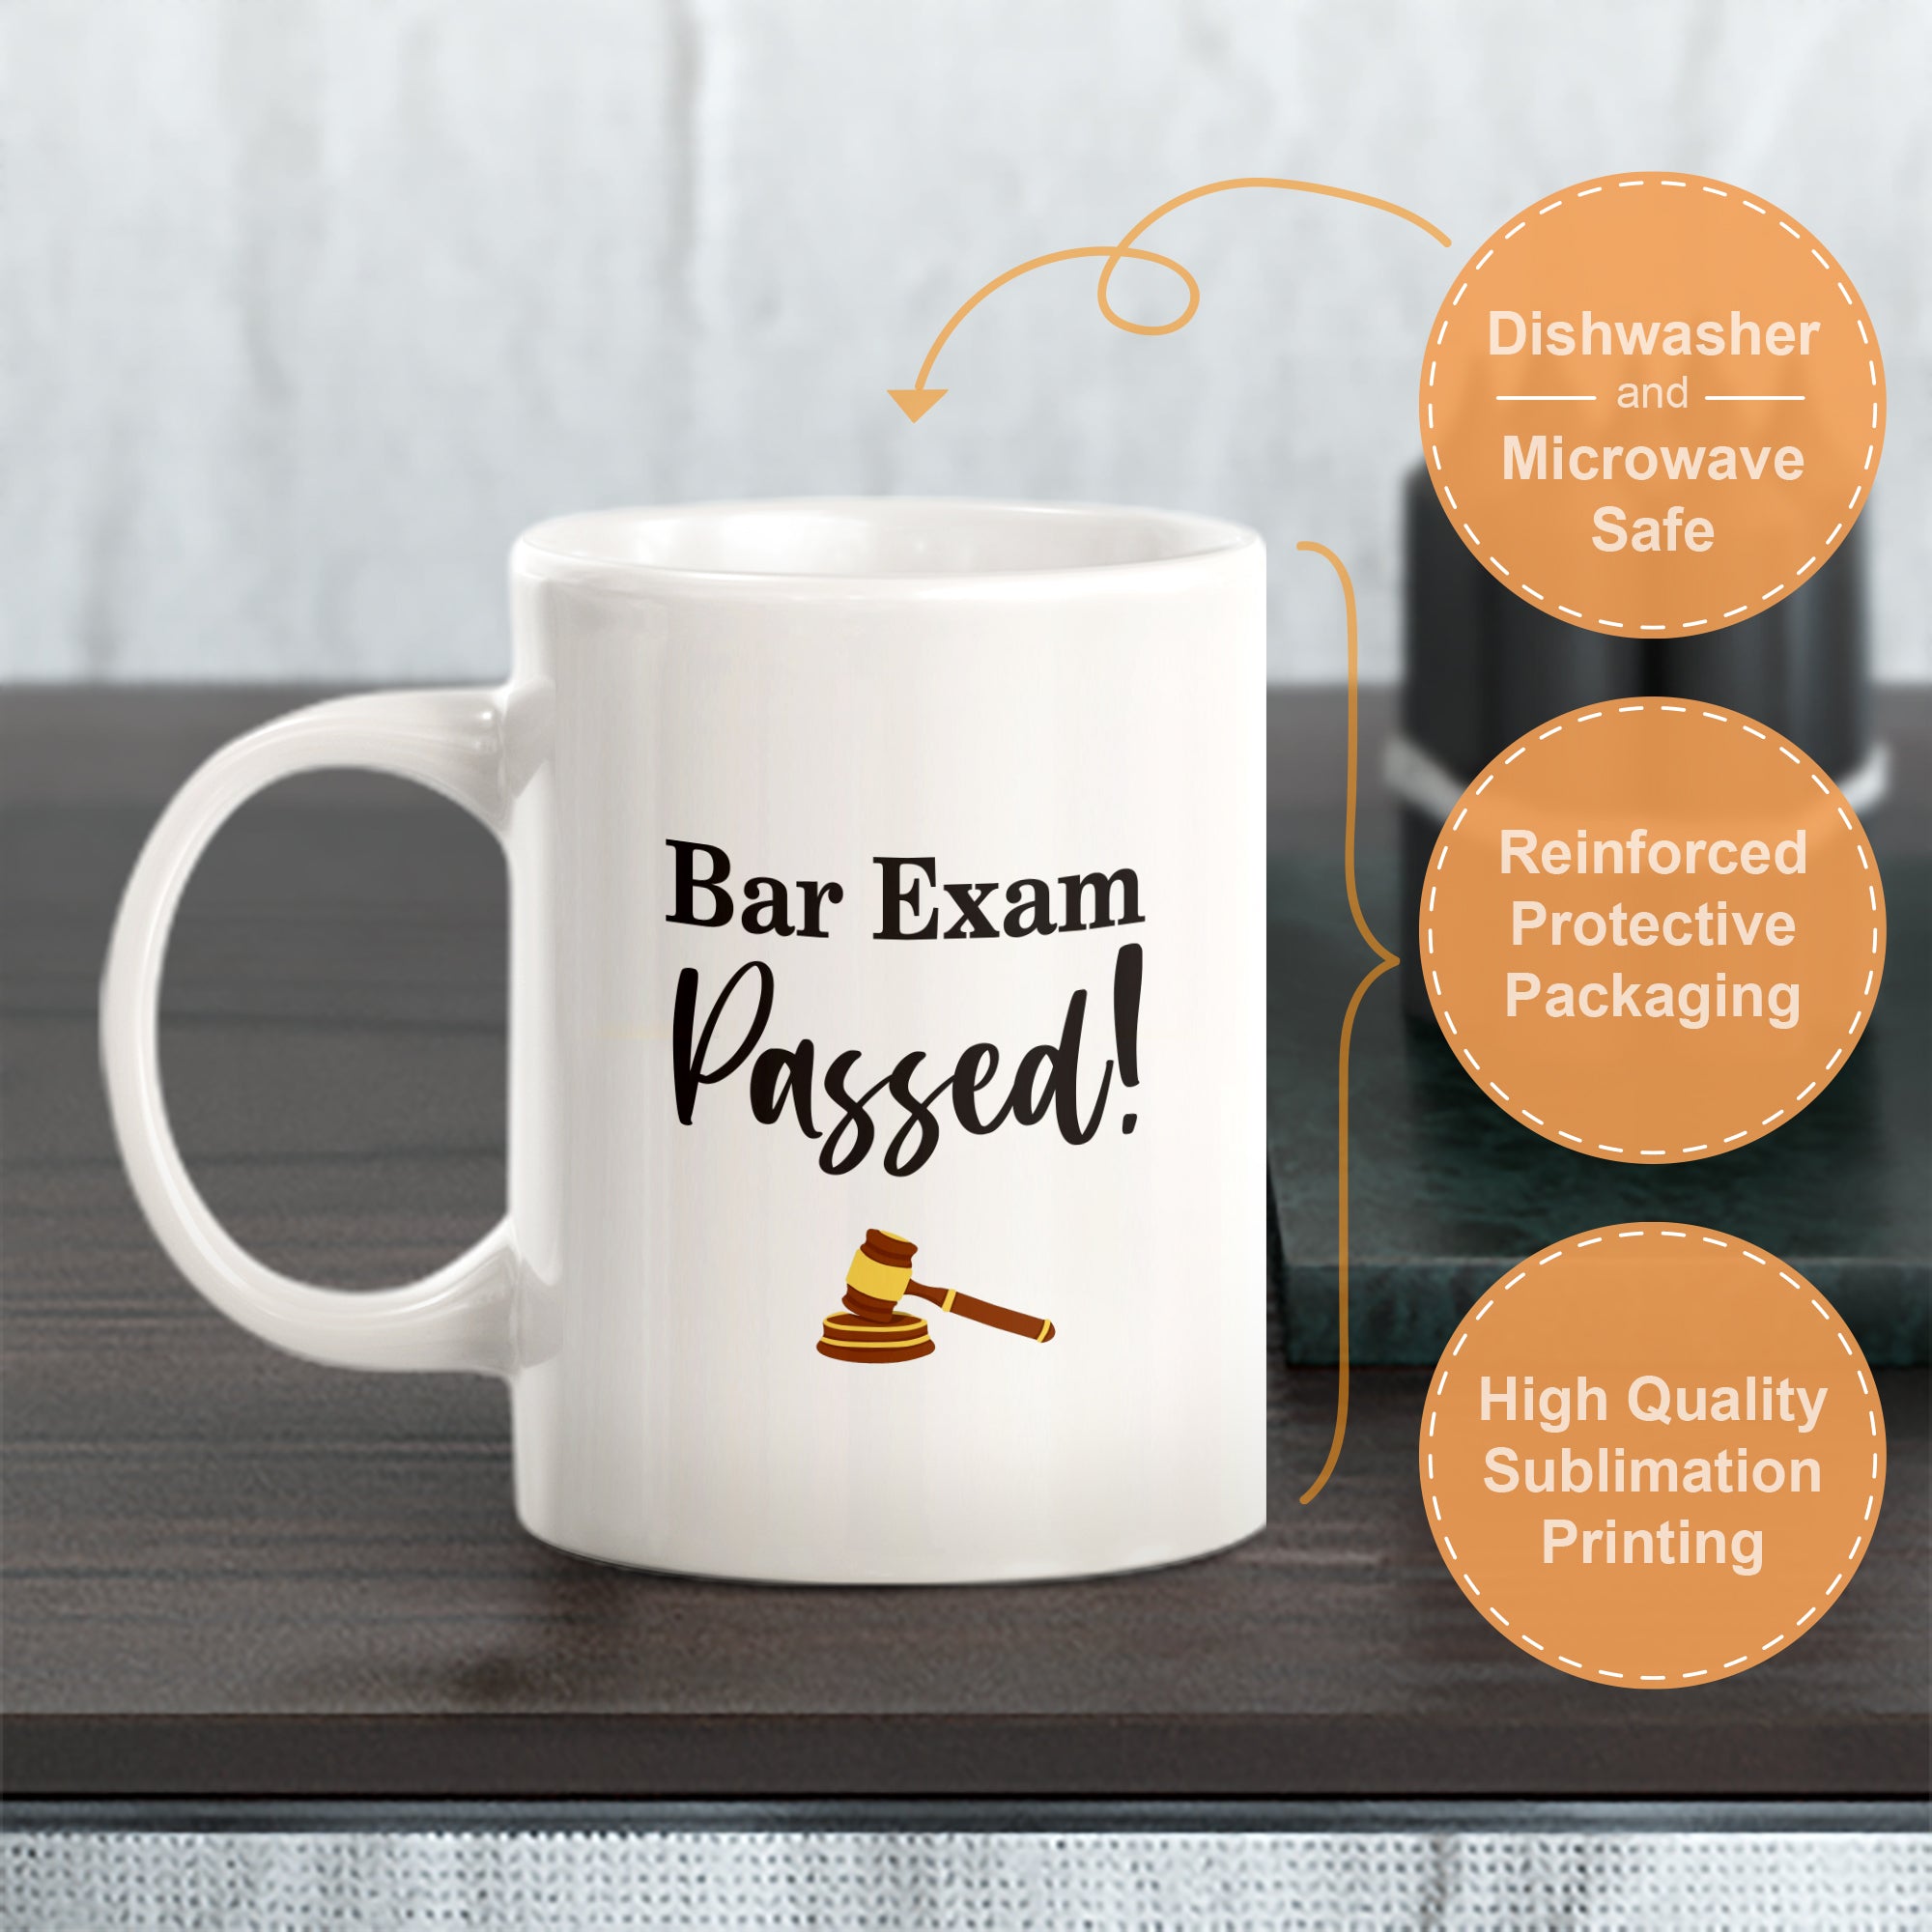 Bar Exam Passed! Coffee Mug